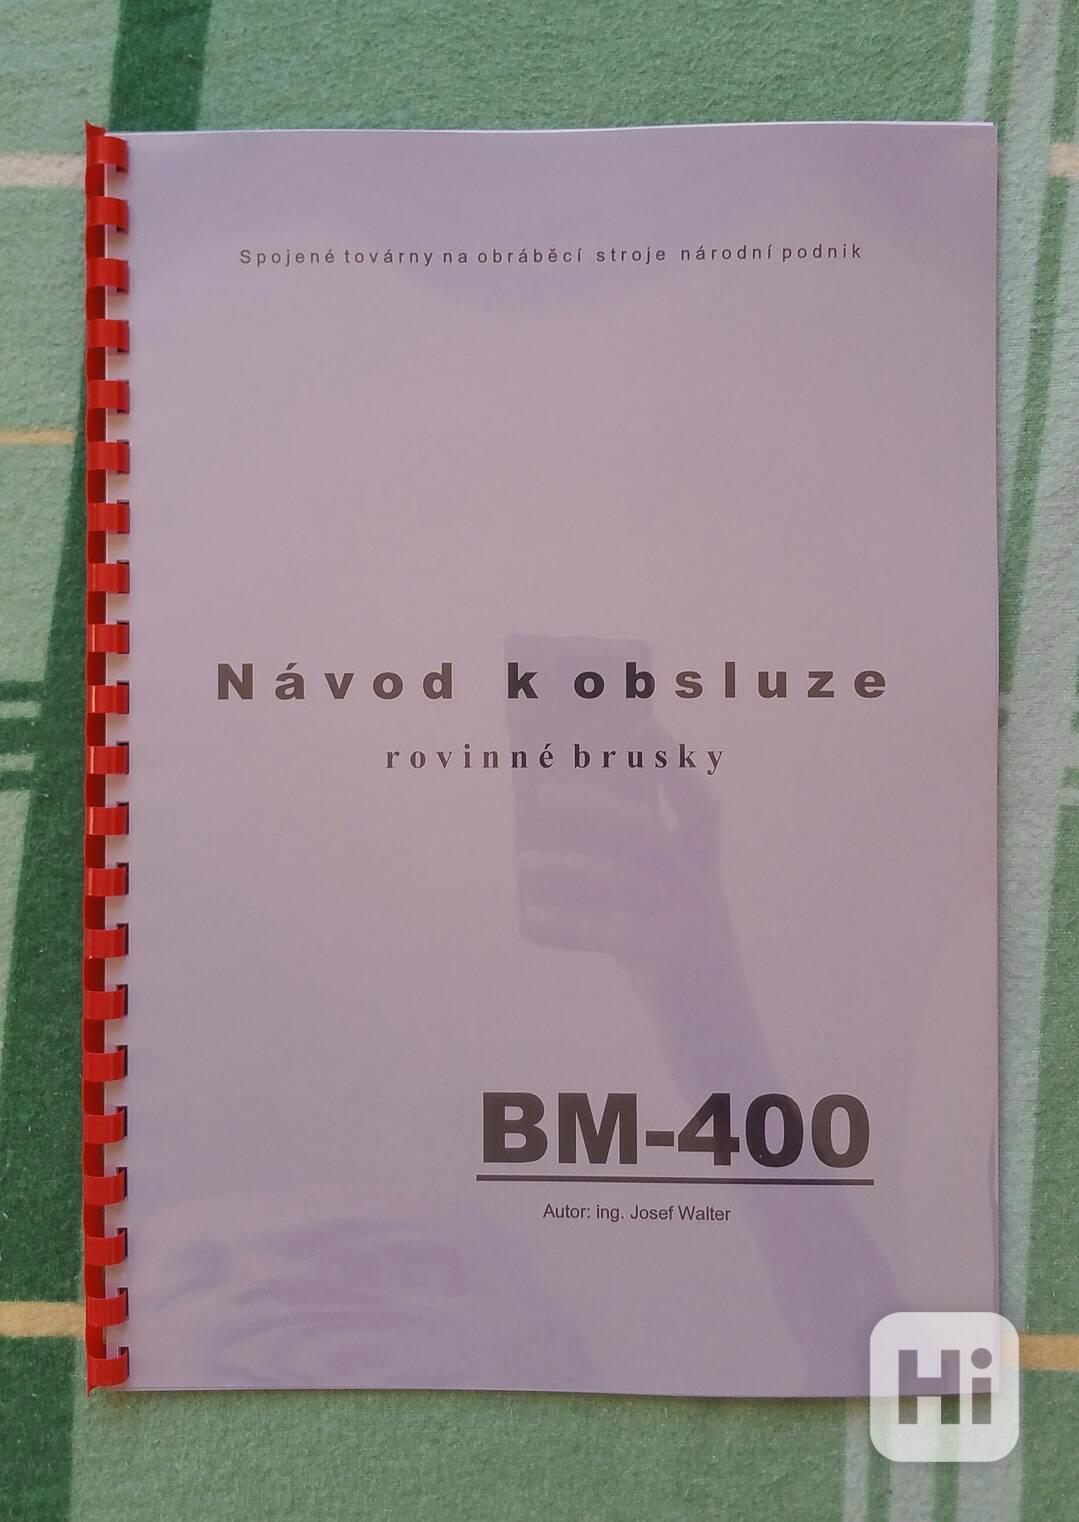 Návod brusky BM-400 - foto 1